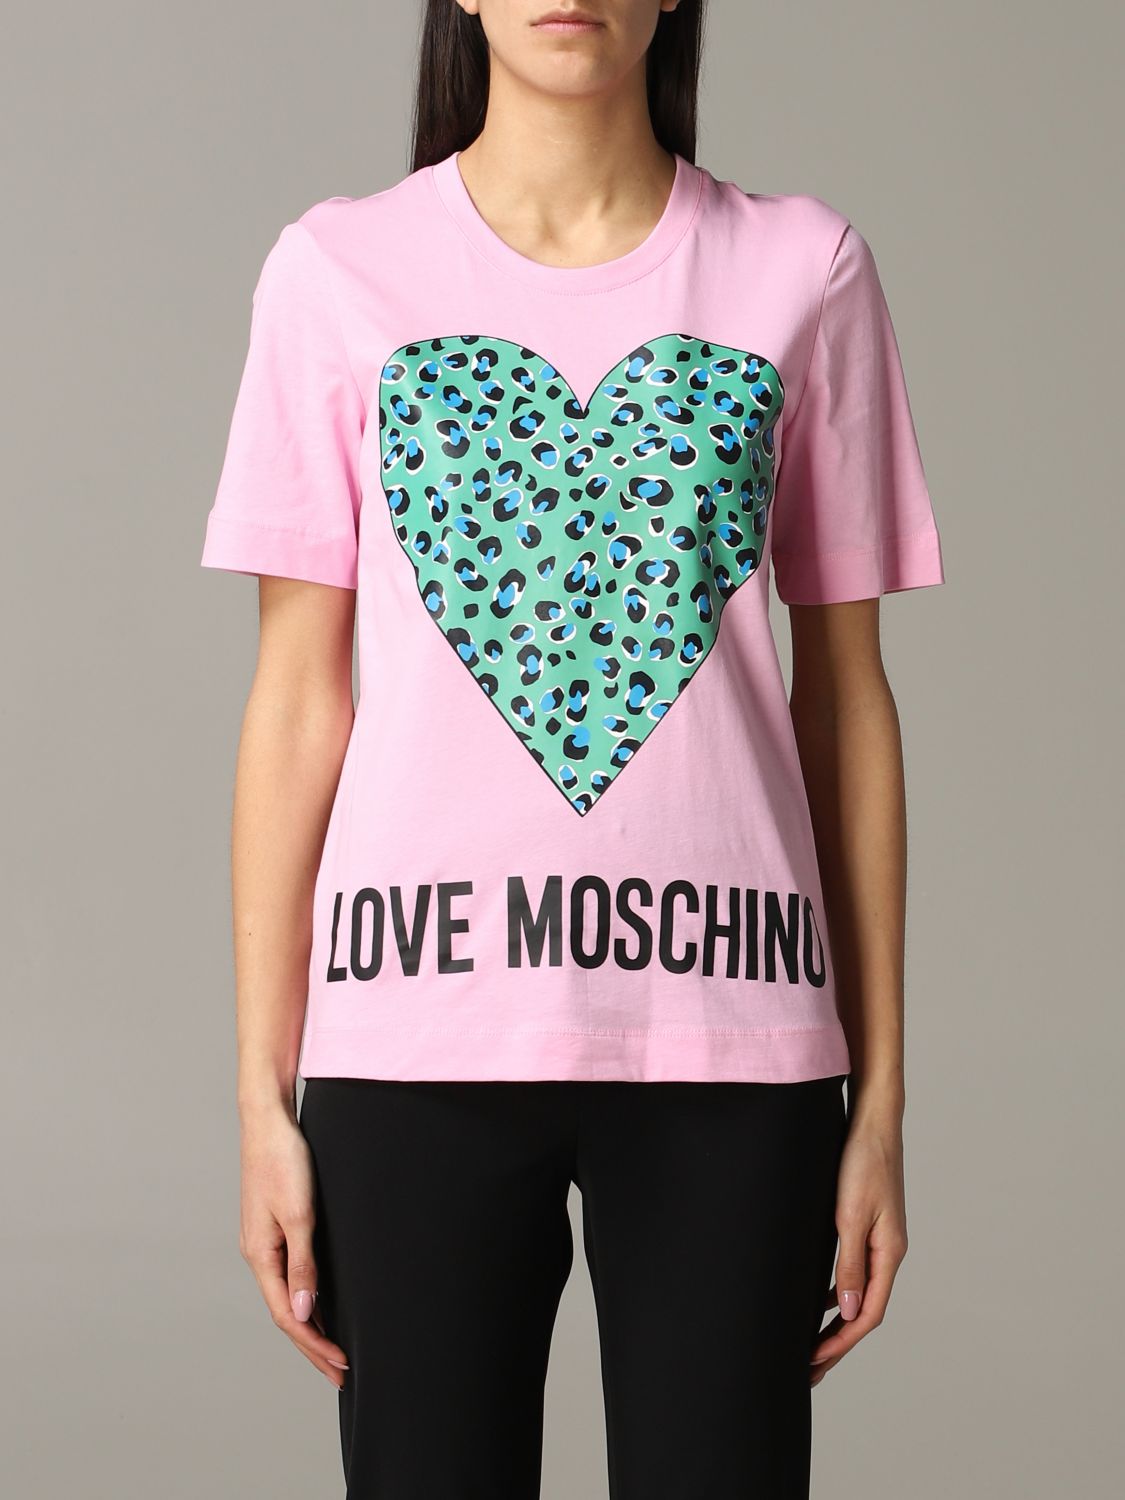 moschino rose t shirt